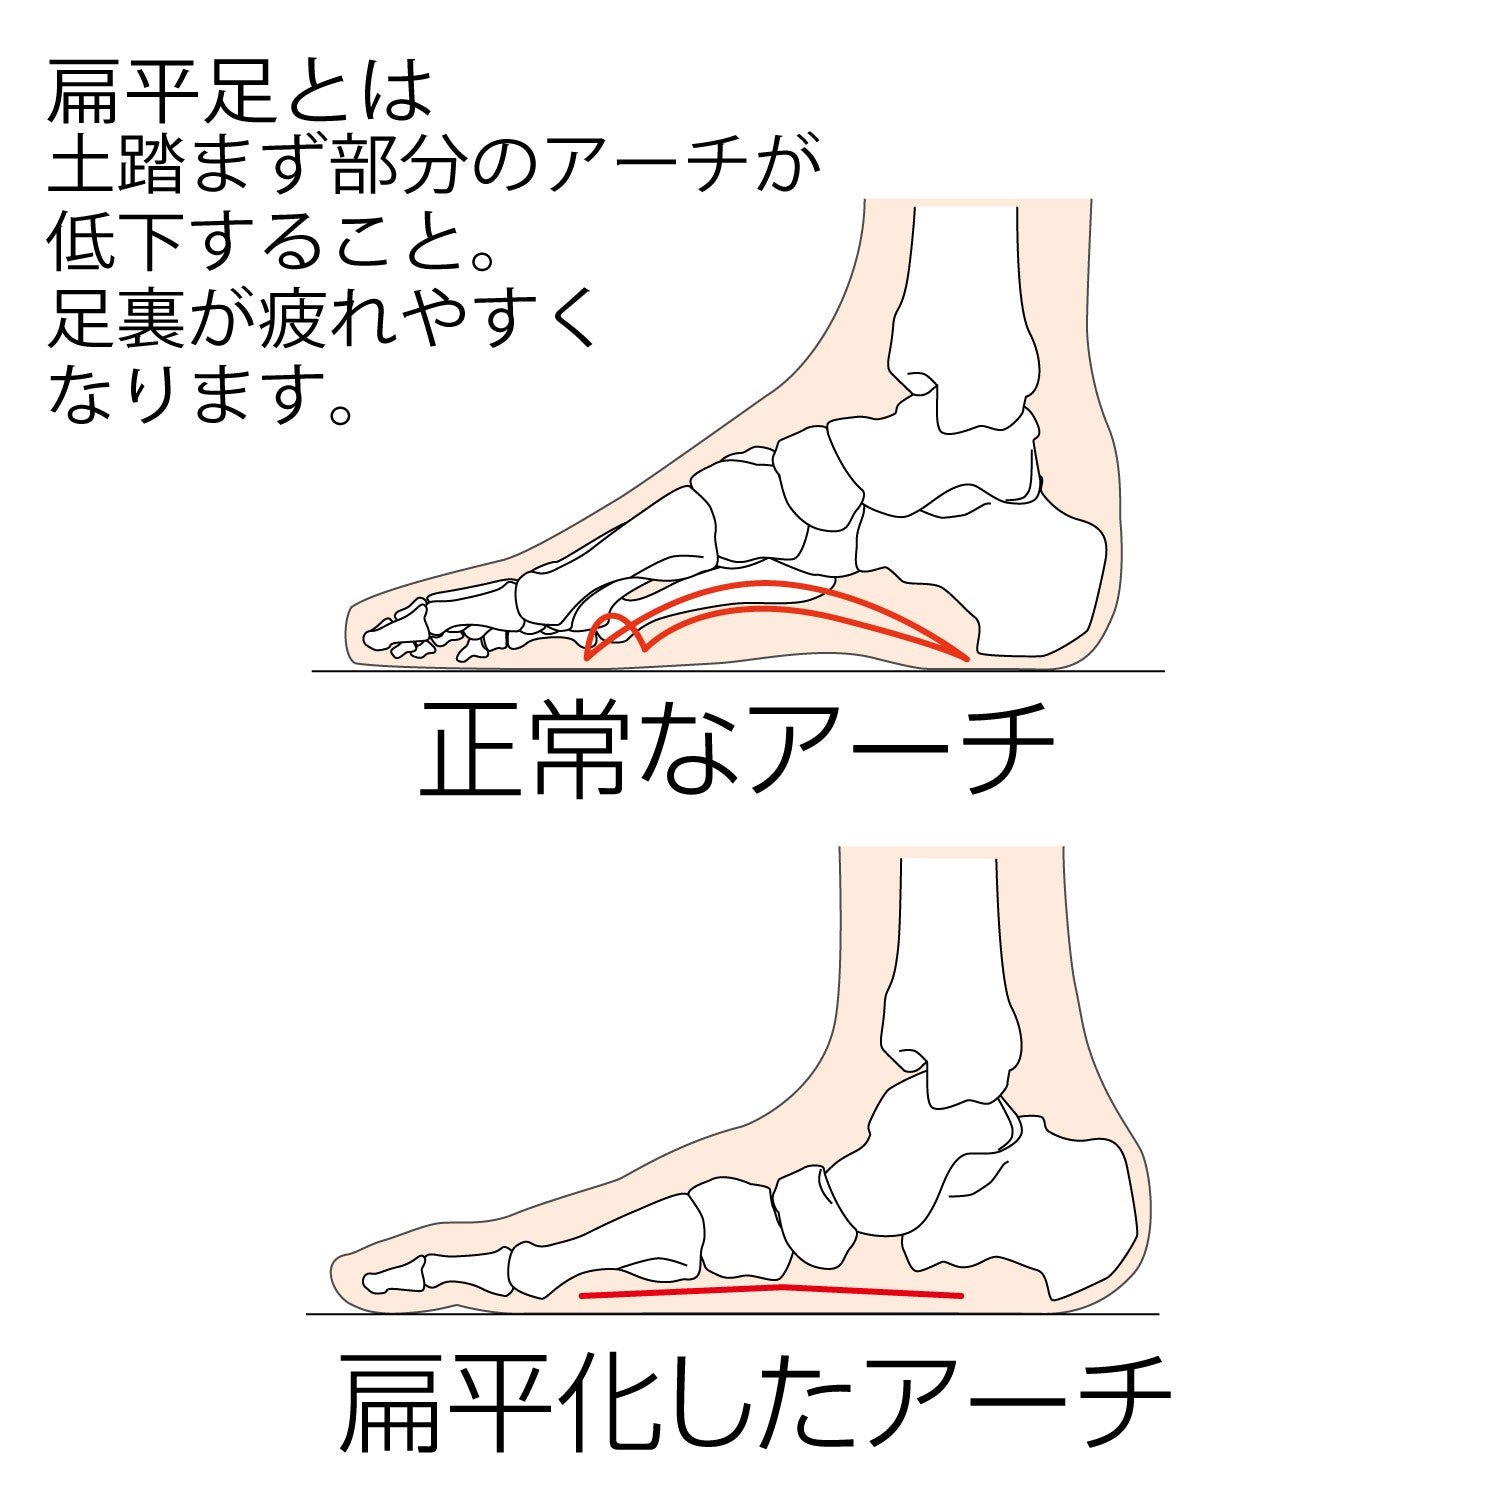 扁平足とは土踏まず部分のアーチが低下すること。足裏が疲れやすくなります